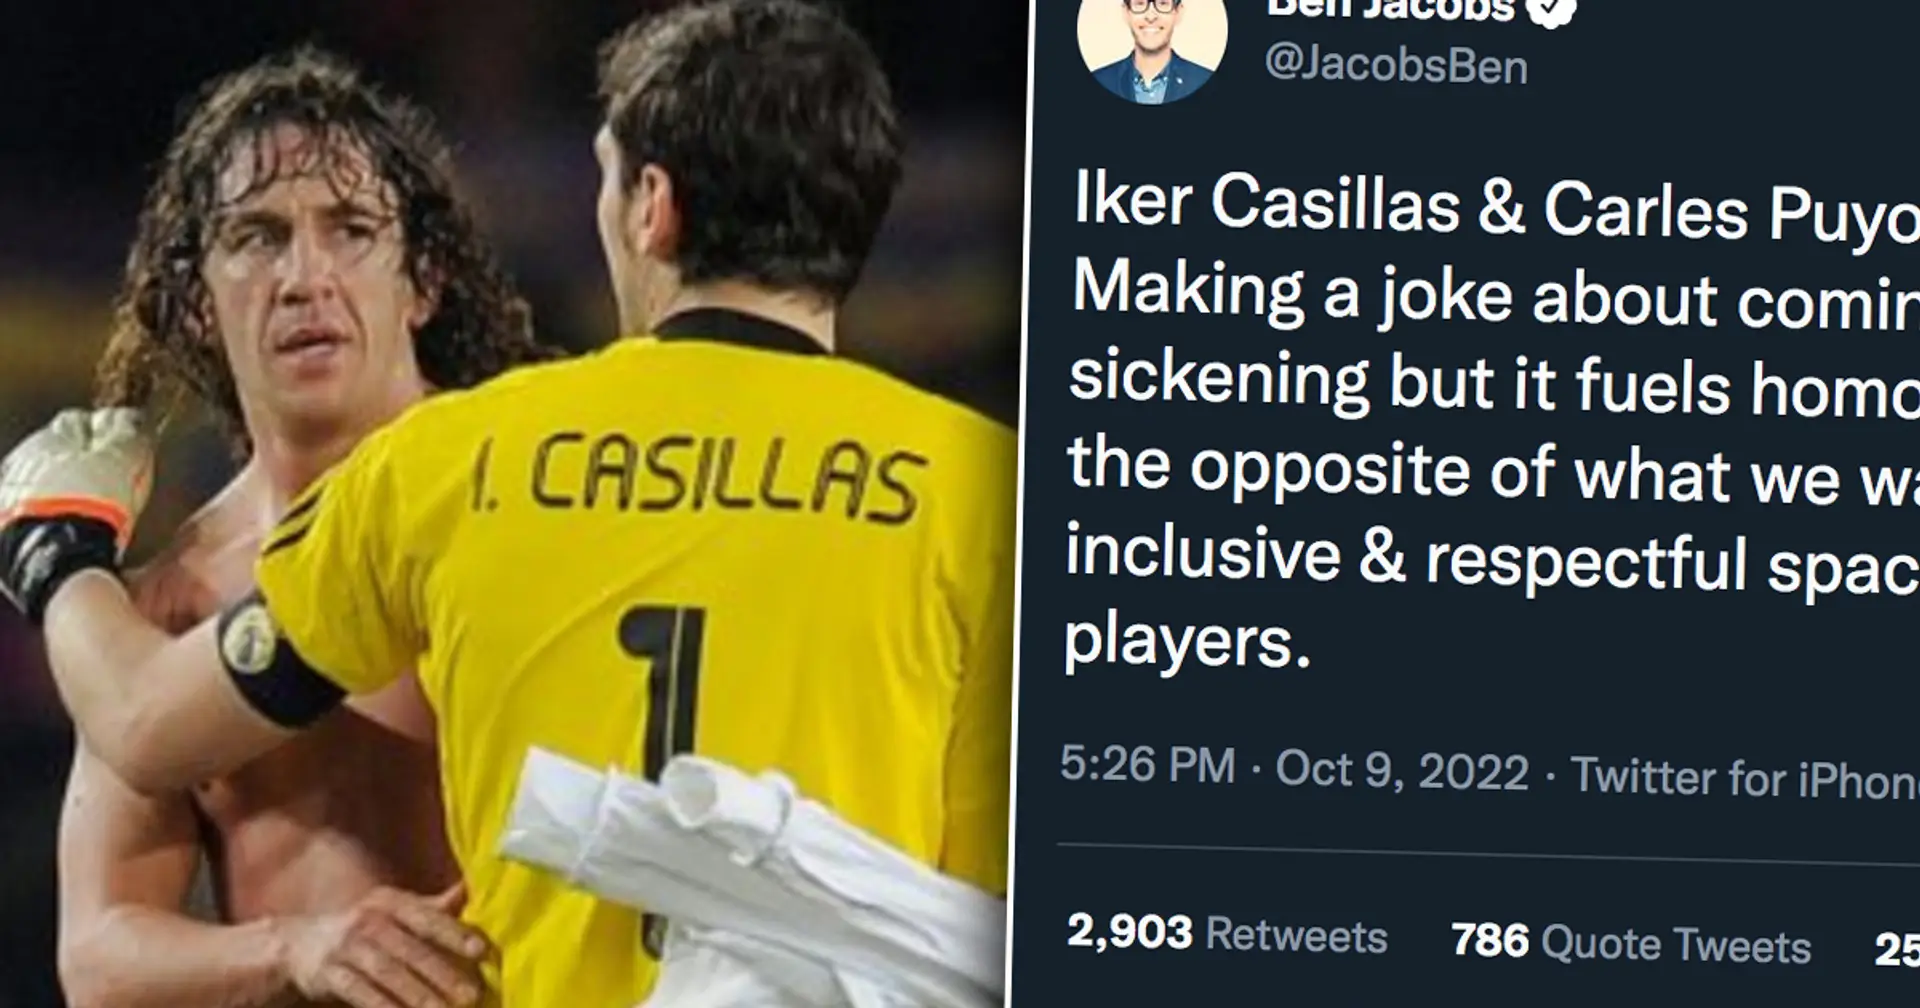 "Ekelhaft, verstärkt die Homophobie": Puyol und Casillas für "schwule" Tweets heftig kritisiert